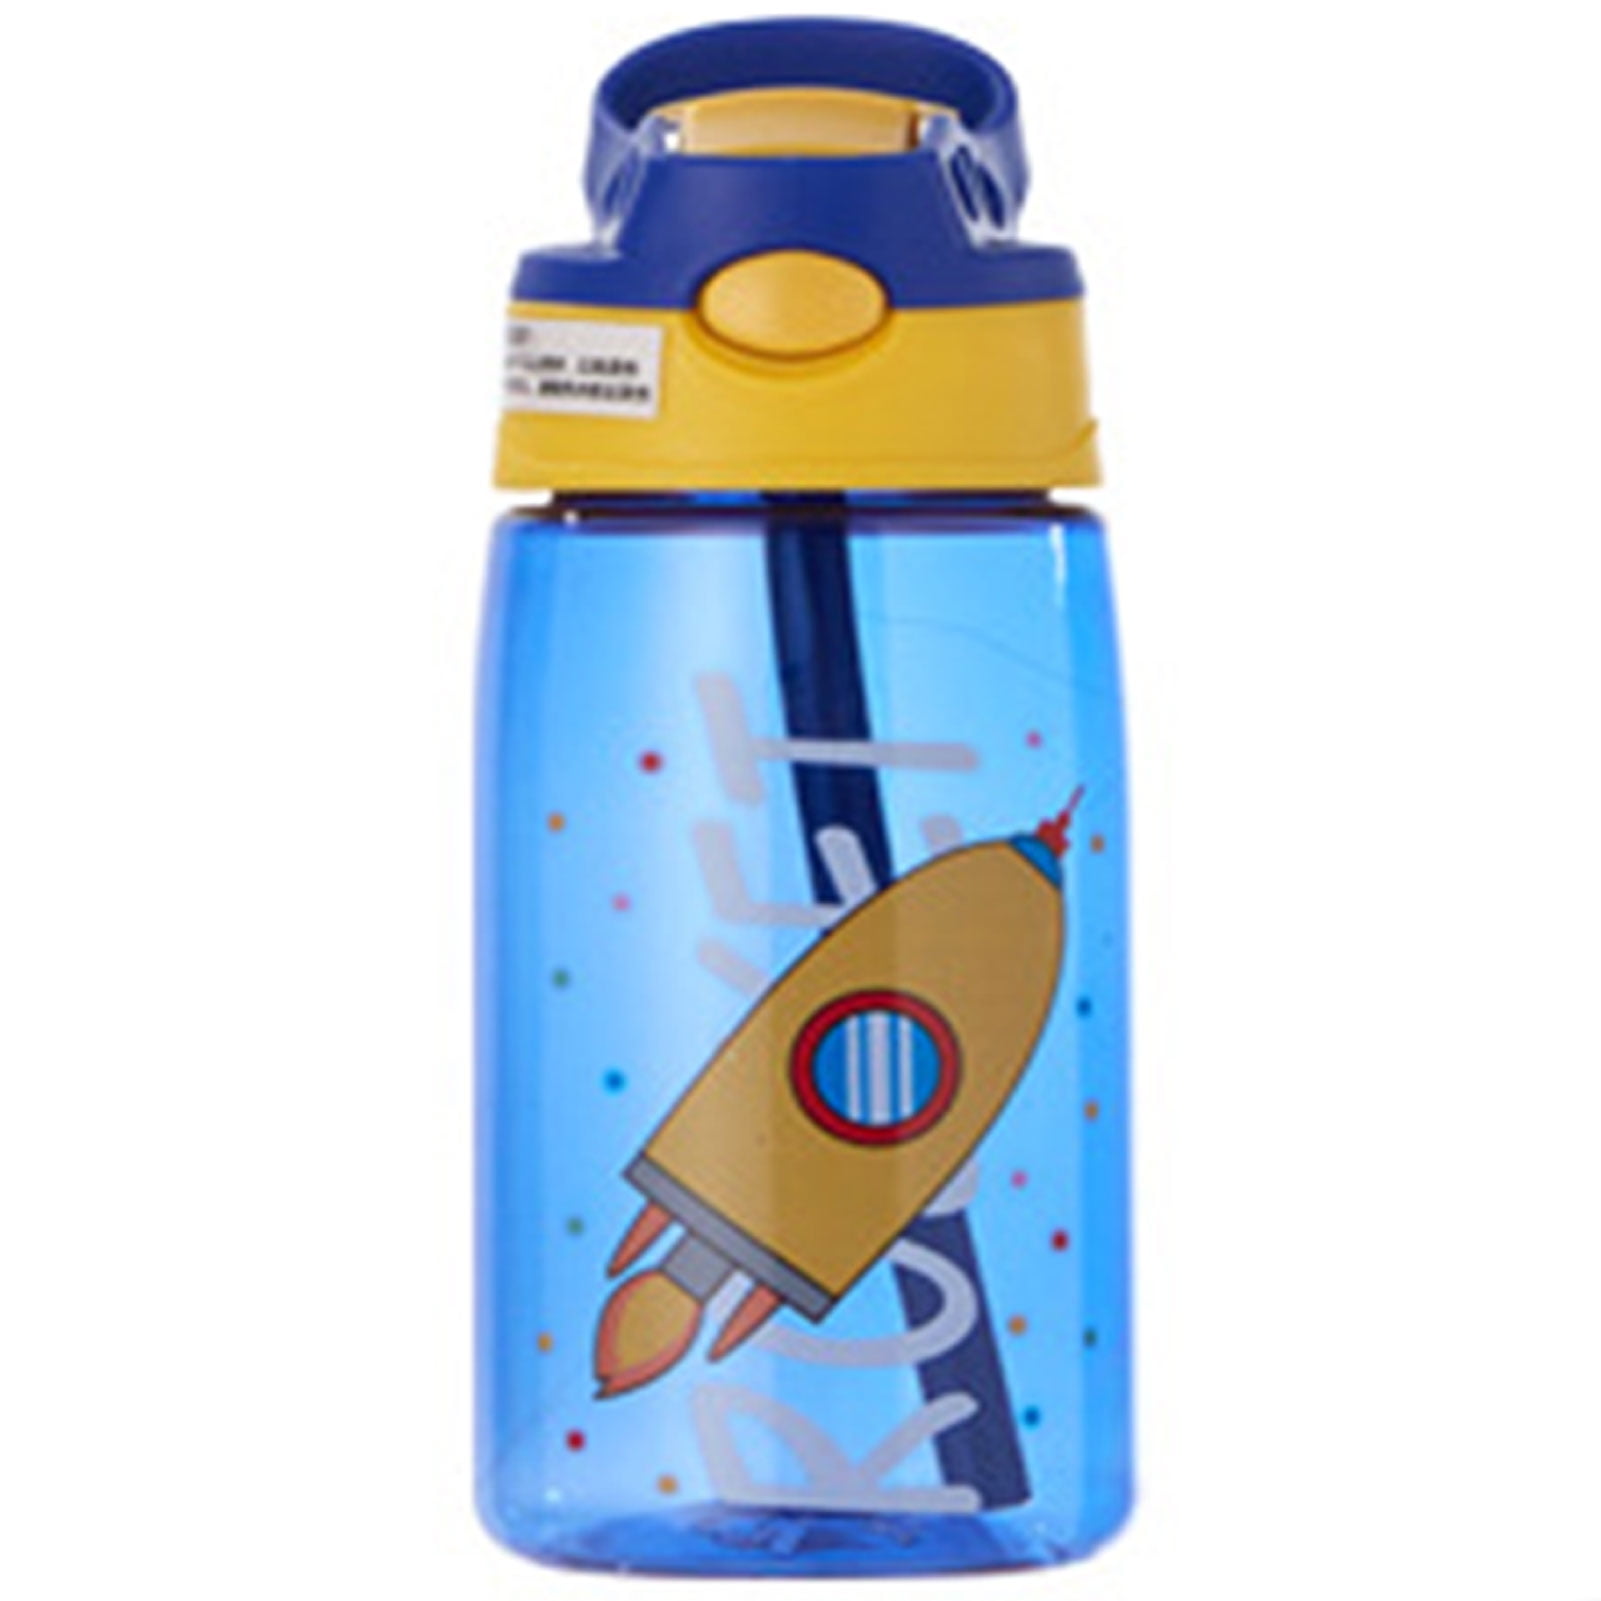 Boys Cute Blue Rocket Ship Space Kids School Water Bottle